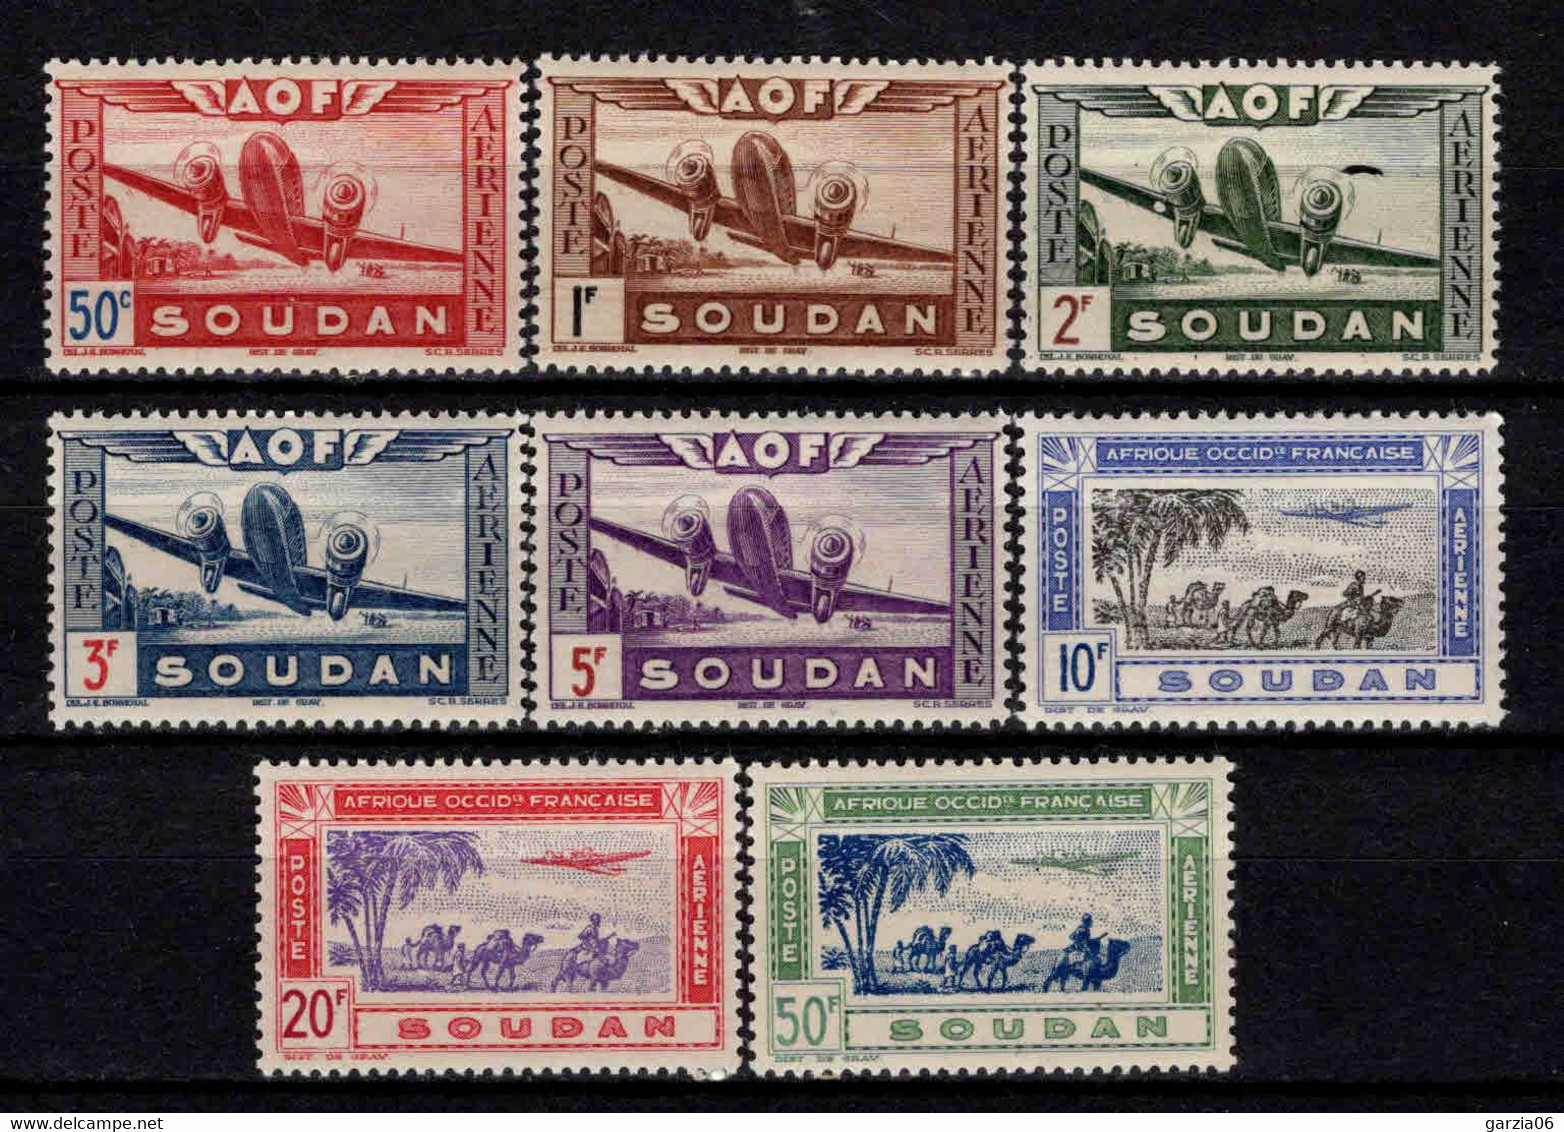 Soudan - 1942  - Avion En Vol - PA 10 à 17  - Neuf ** - MNH - Nuevos